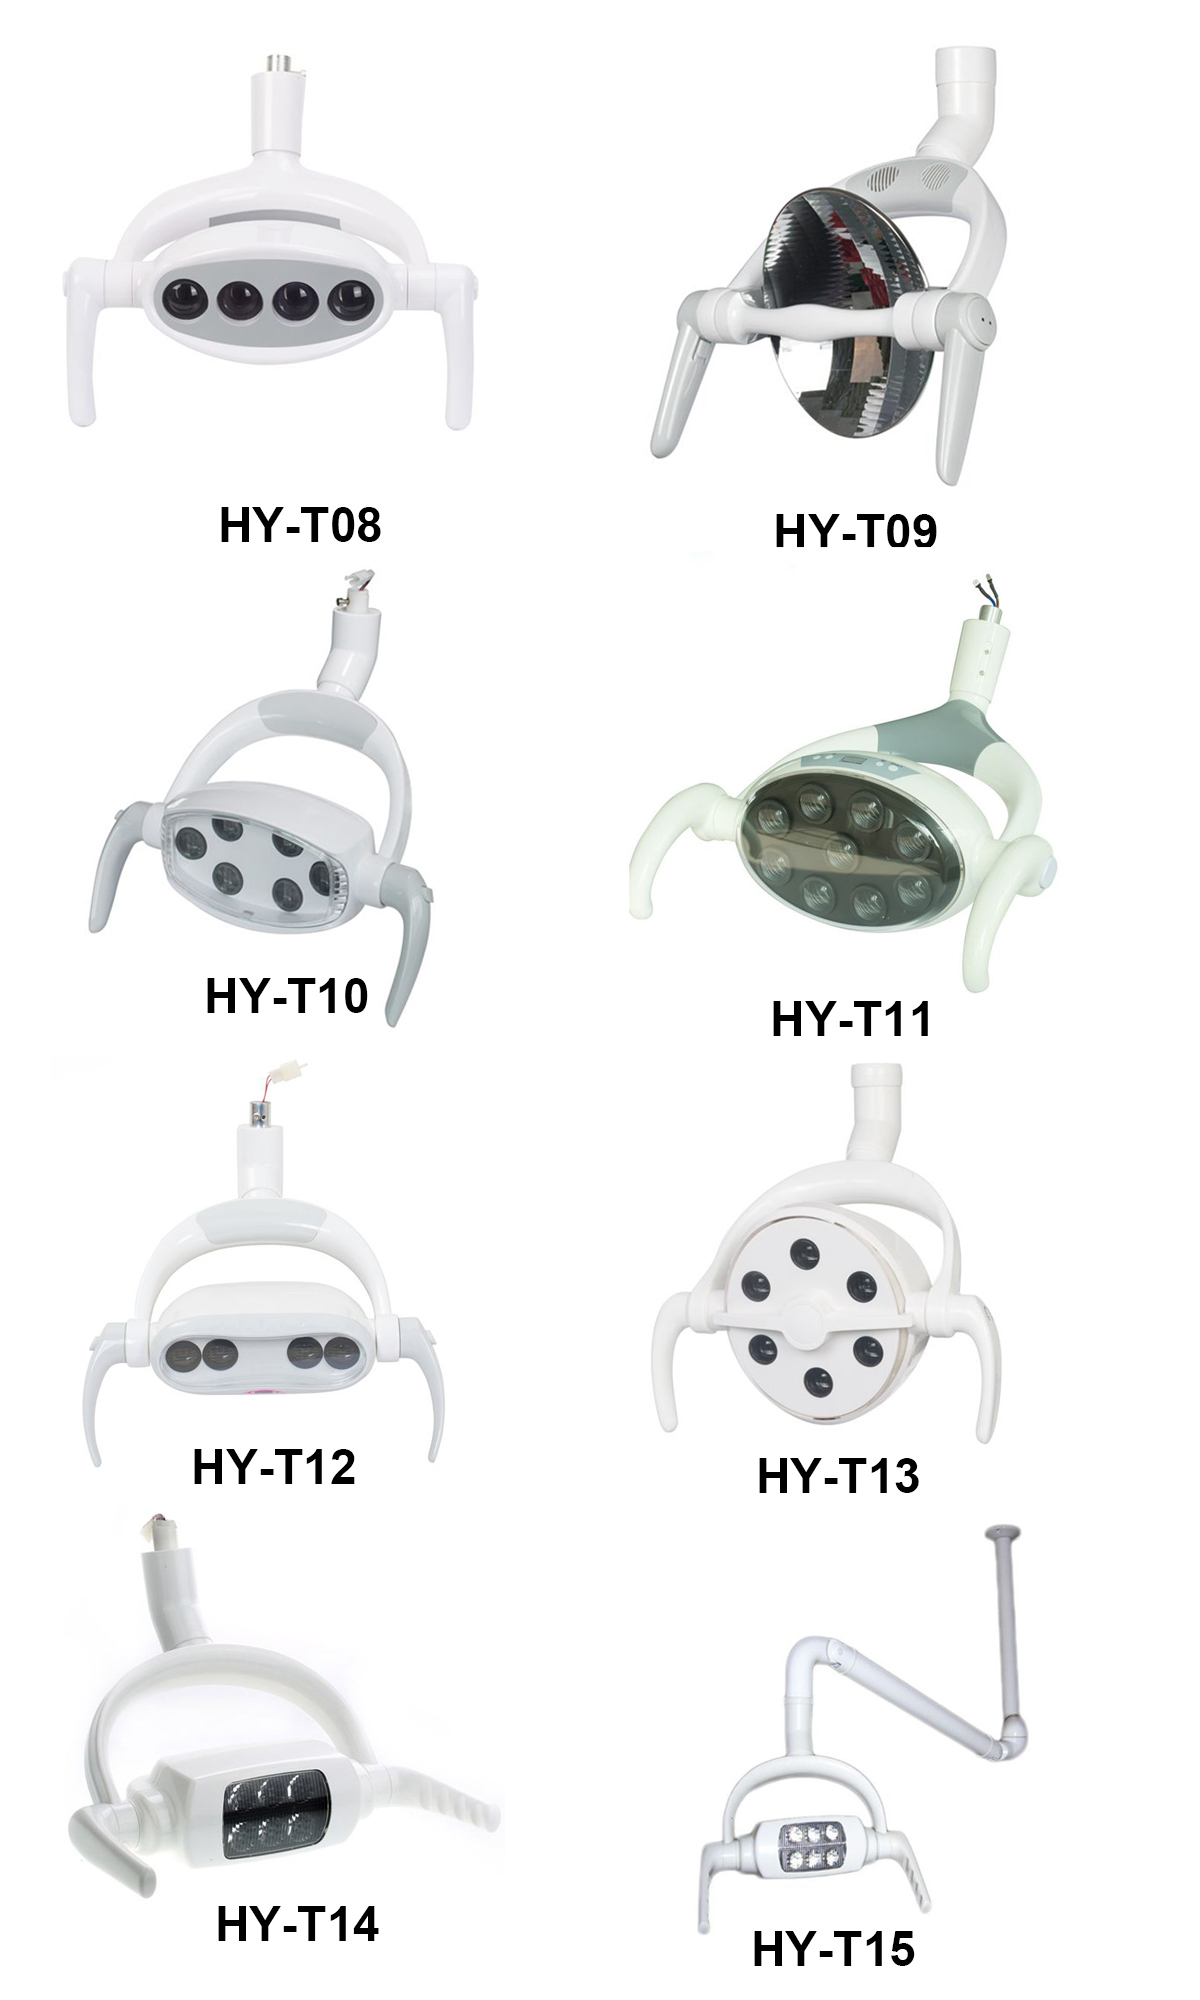 HY-T13 Dental LED Lamp